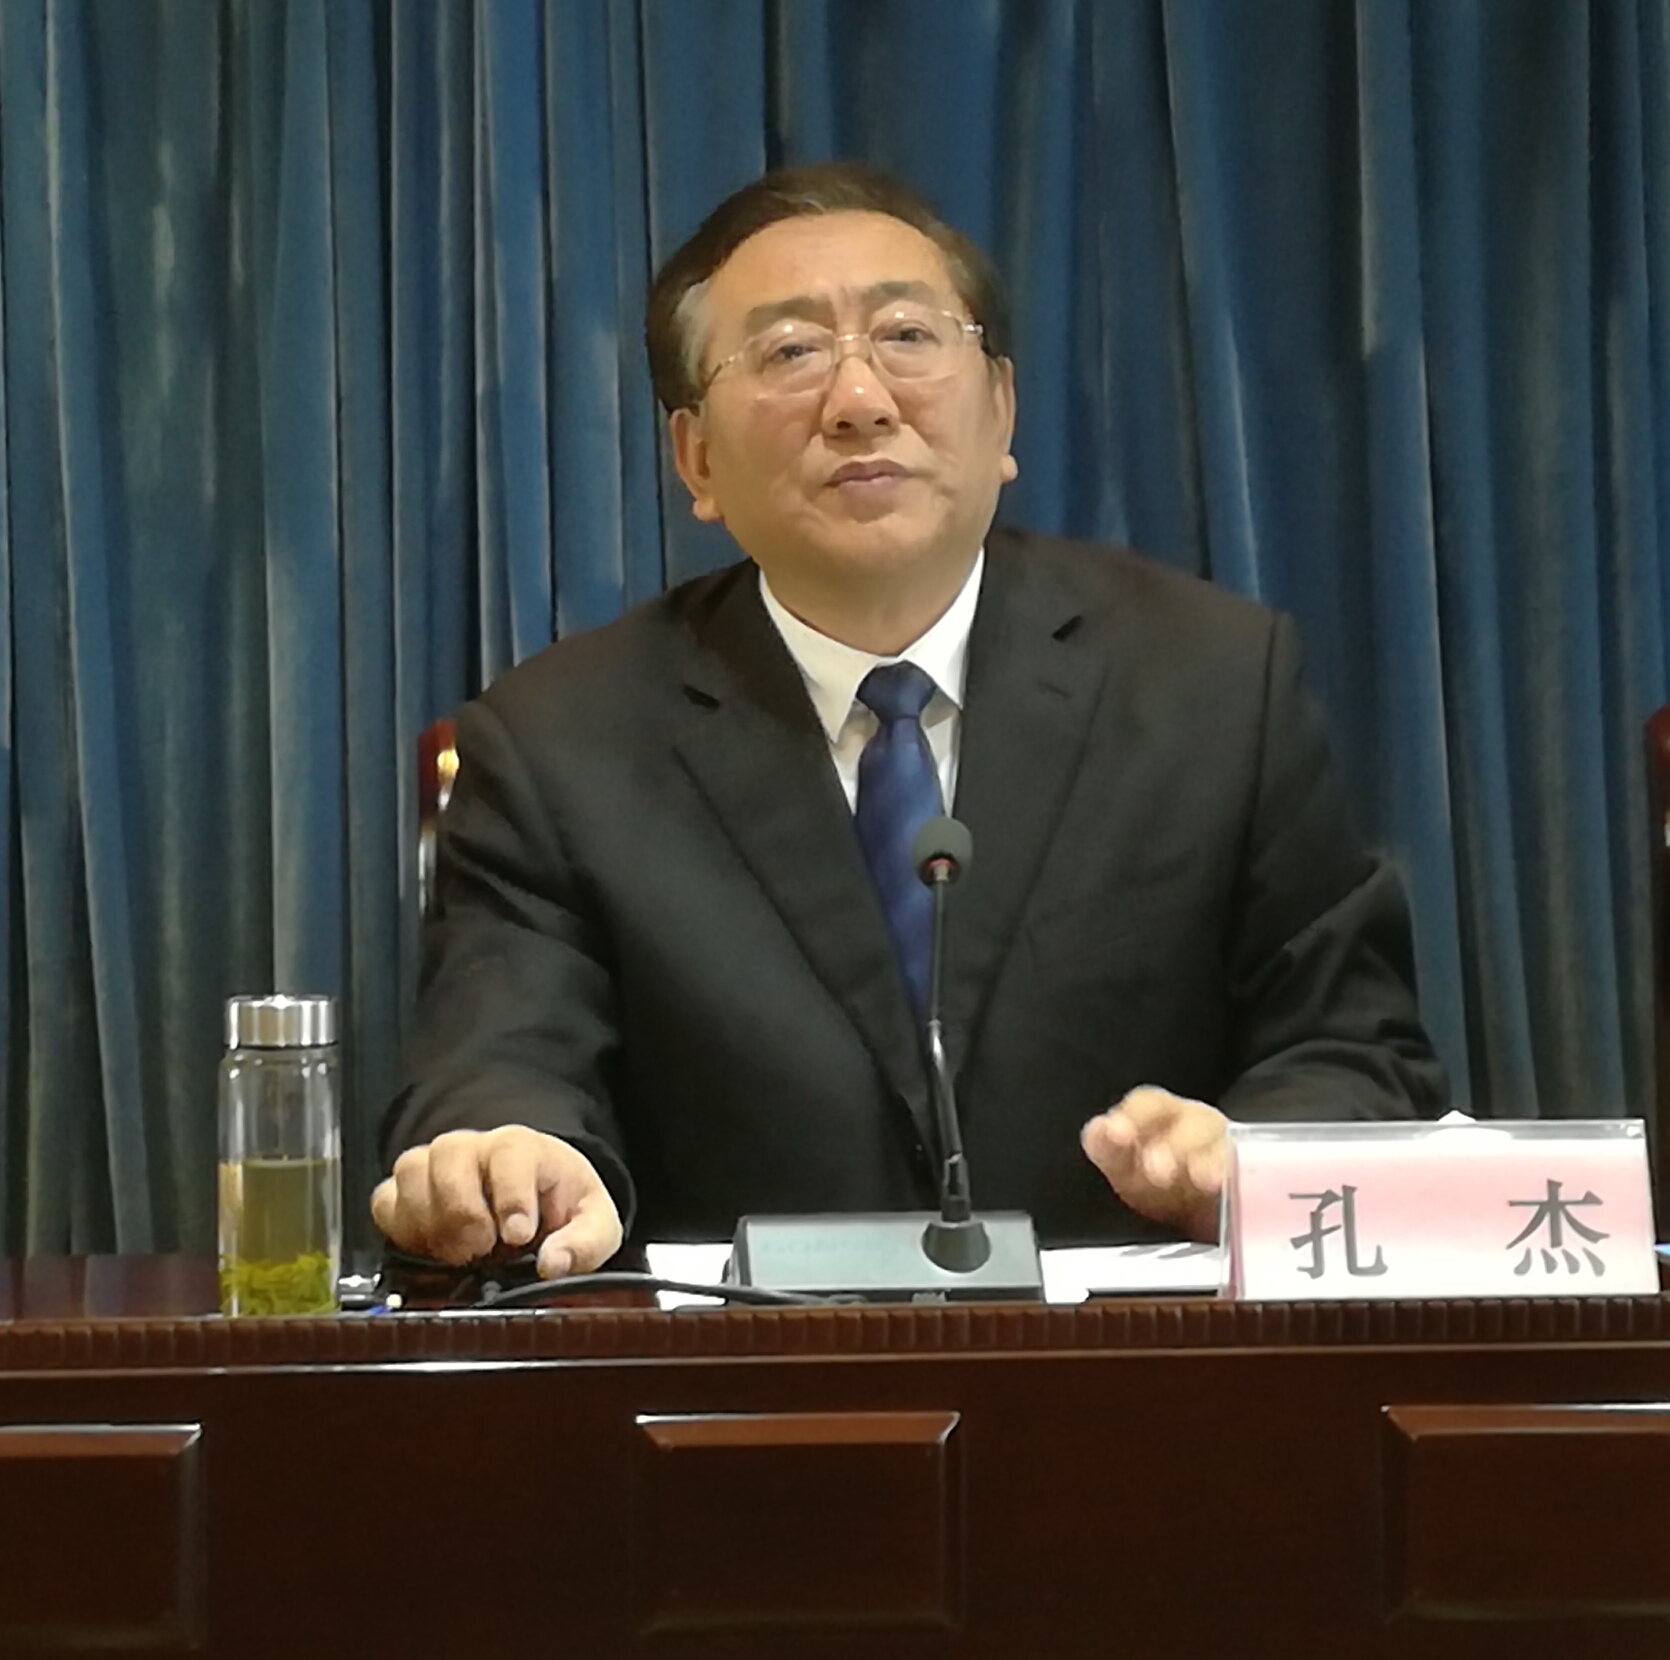 甘肃农资协会举行会员代表大会 孔杰当选第二届会长